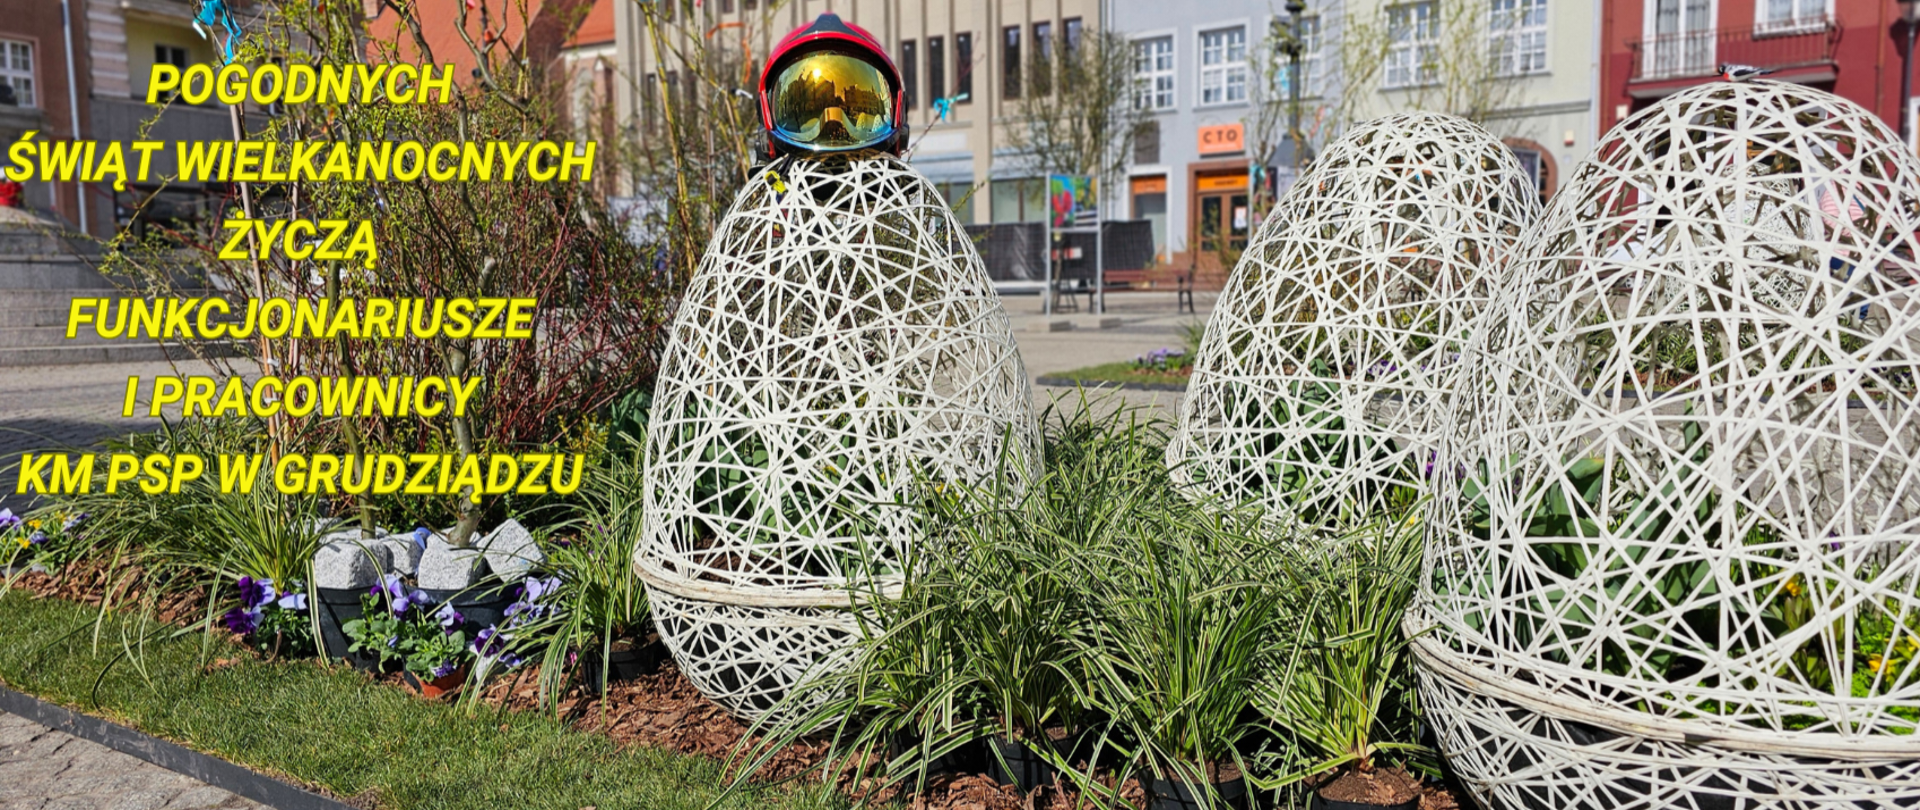 Wielkanocna plenerowa instalacja składająca się z trzech konstrukcji w postaci jaj oraz roślin zielonych z tekstem życzeń